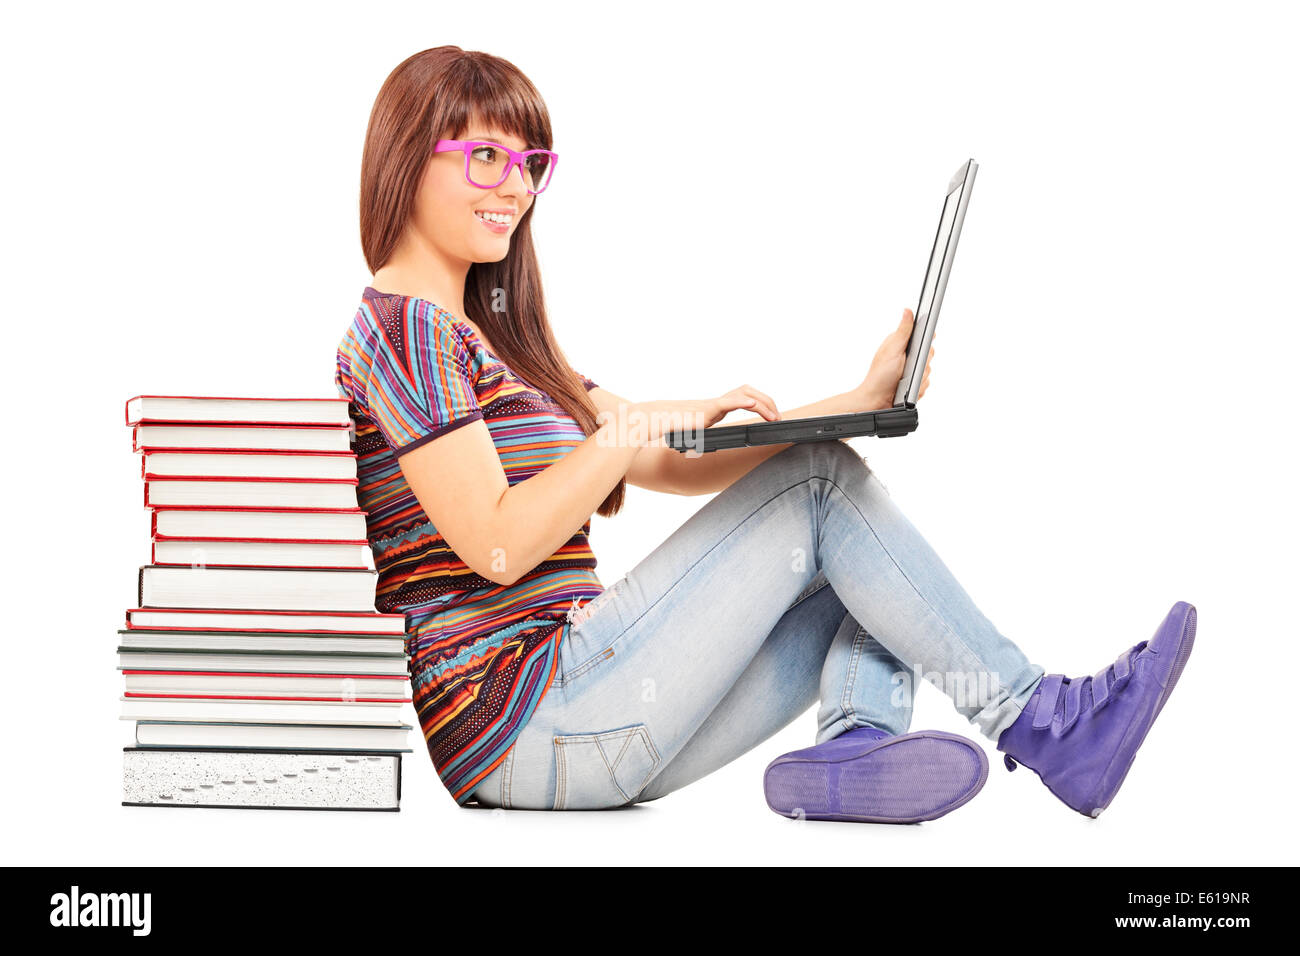 Frau auf einem Laptop zu studieren und stützte sich auf einen Stapel Bücher Stockfoto